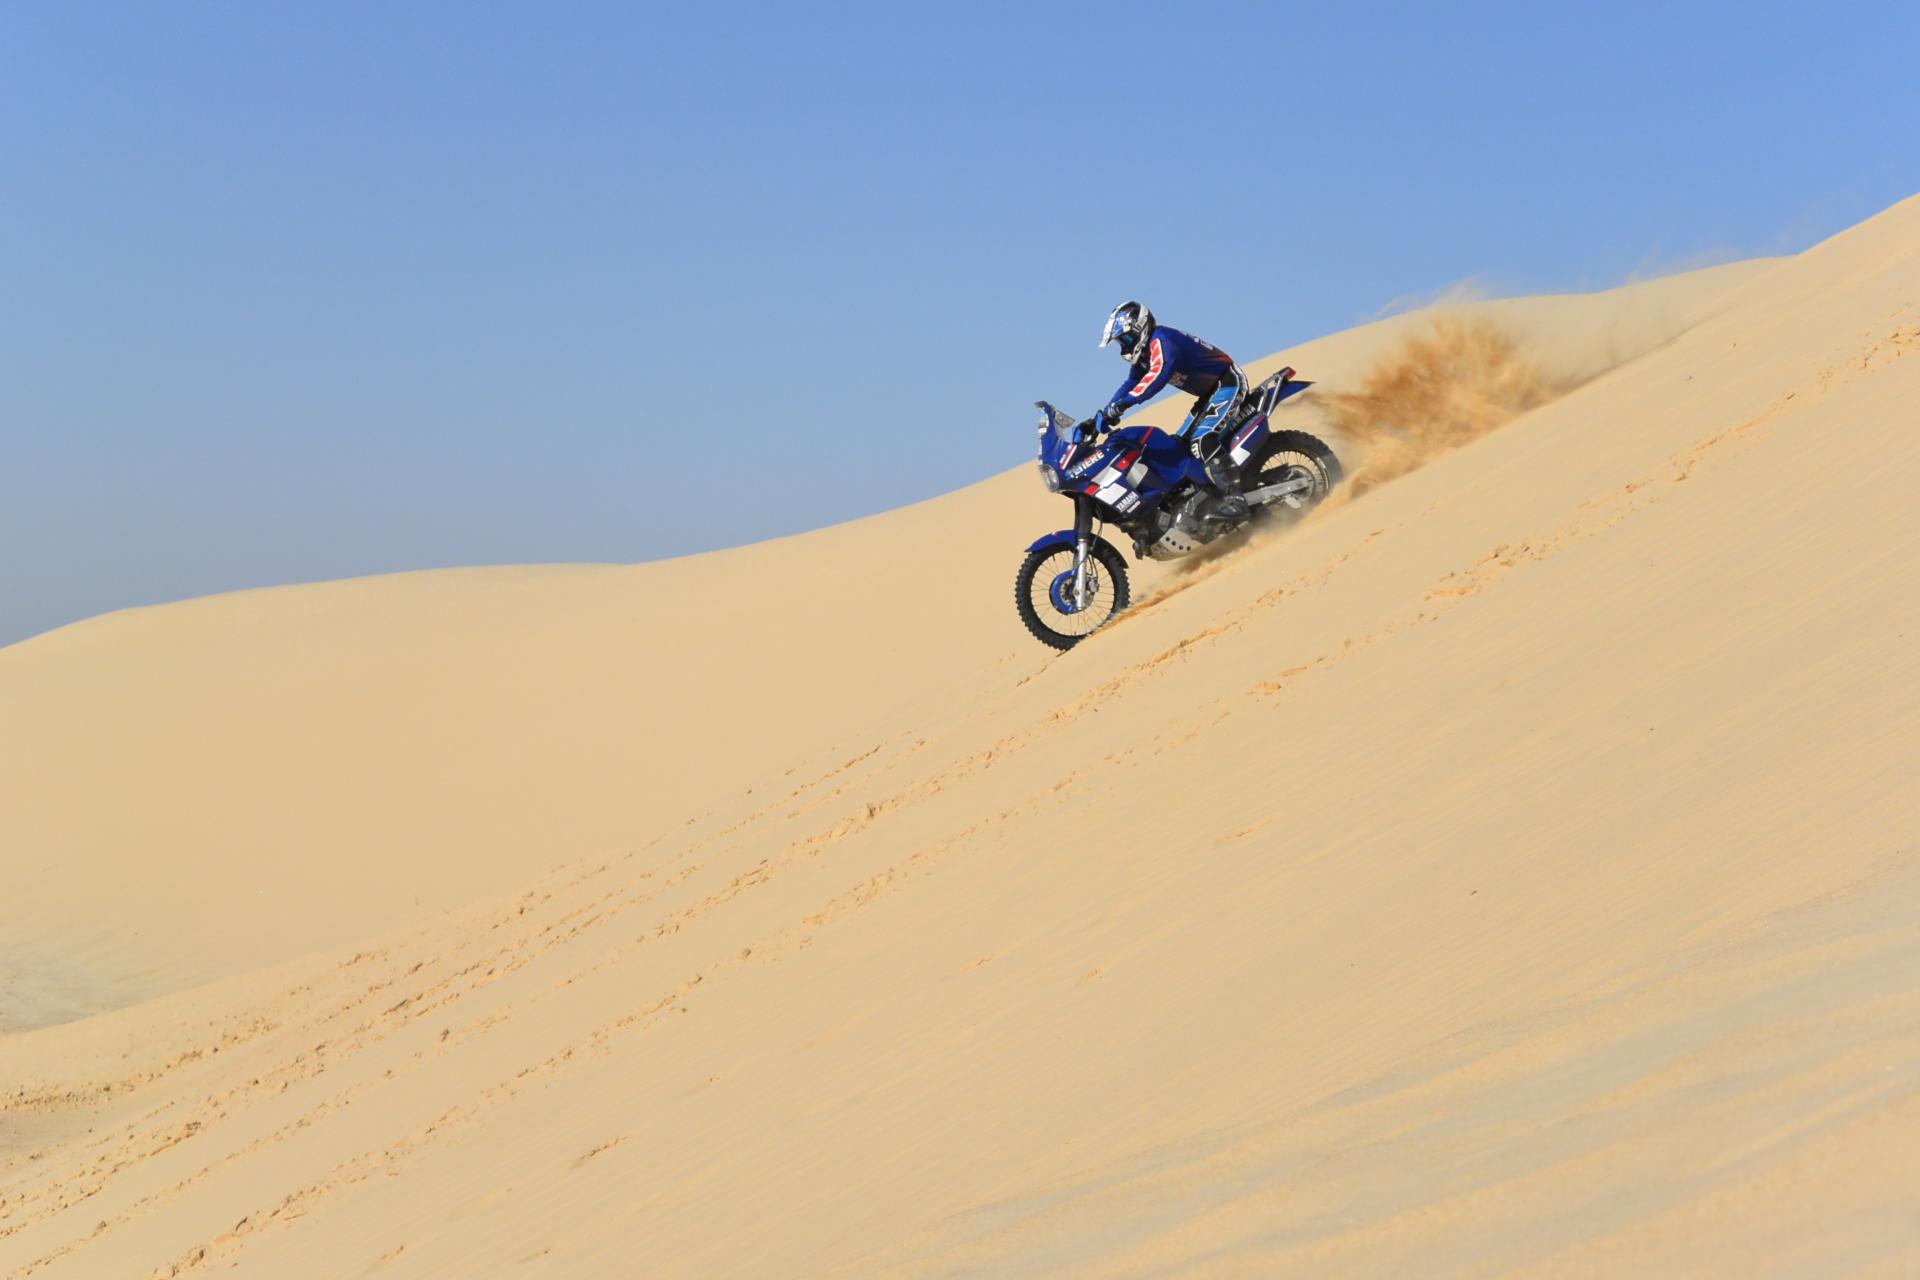 SuperTènèrè deserto Tunisia discesa duna